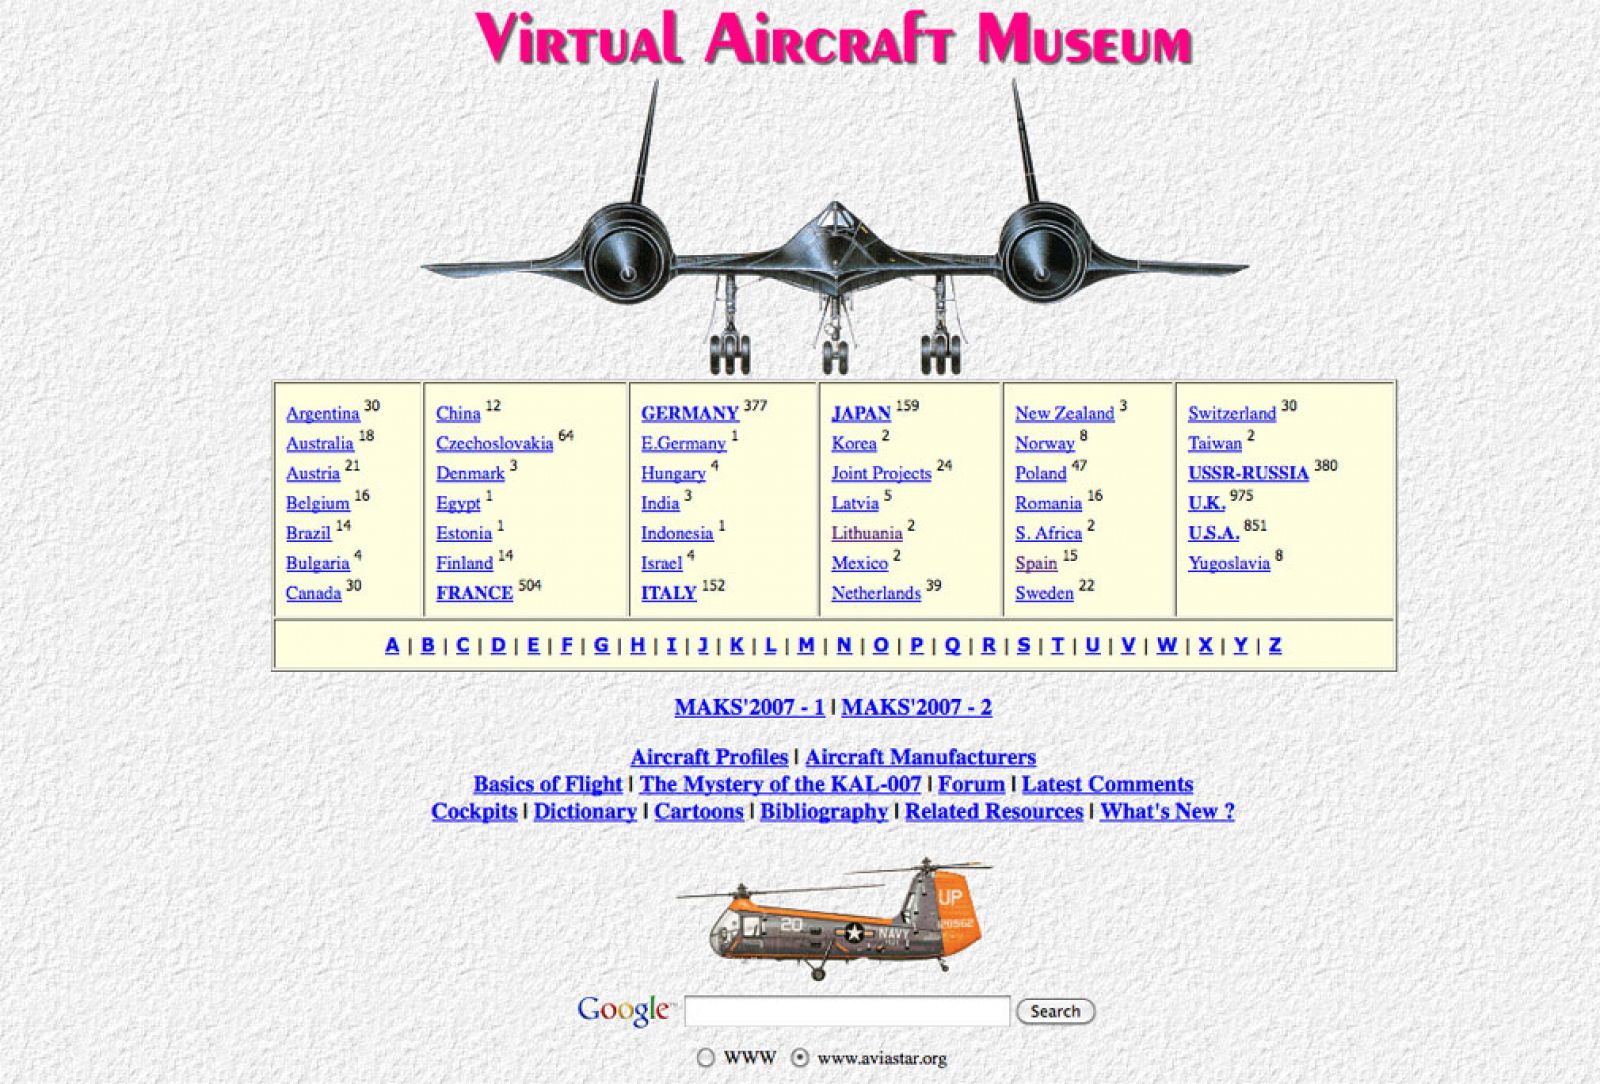 Las primigenias páginas web que poblaron la WWW en sus inicios son vistos como diseños vintage.